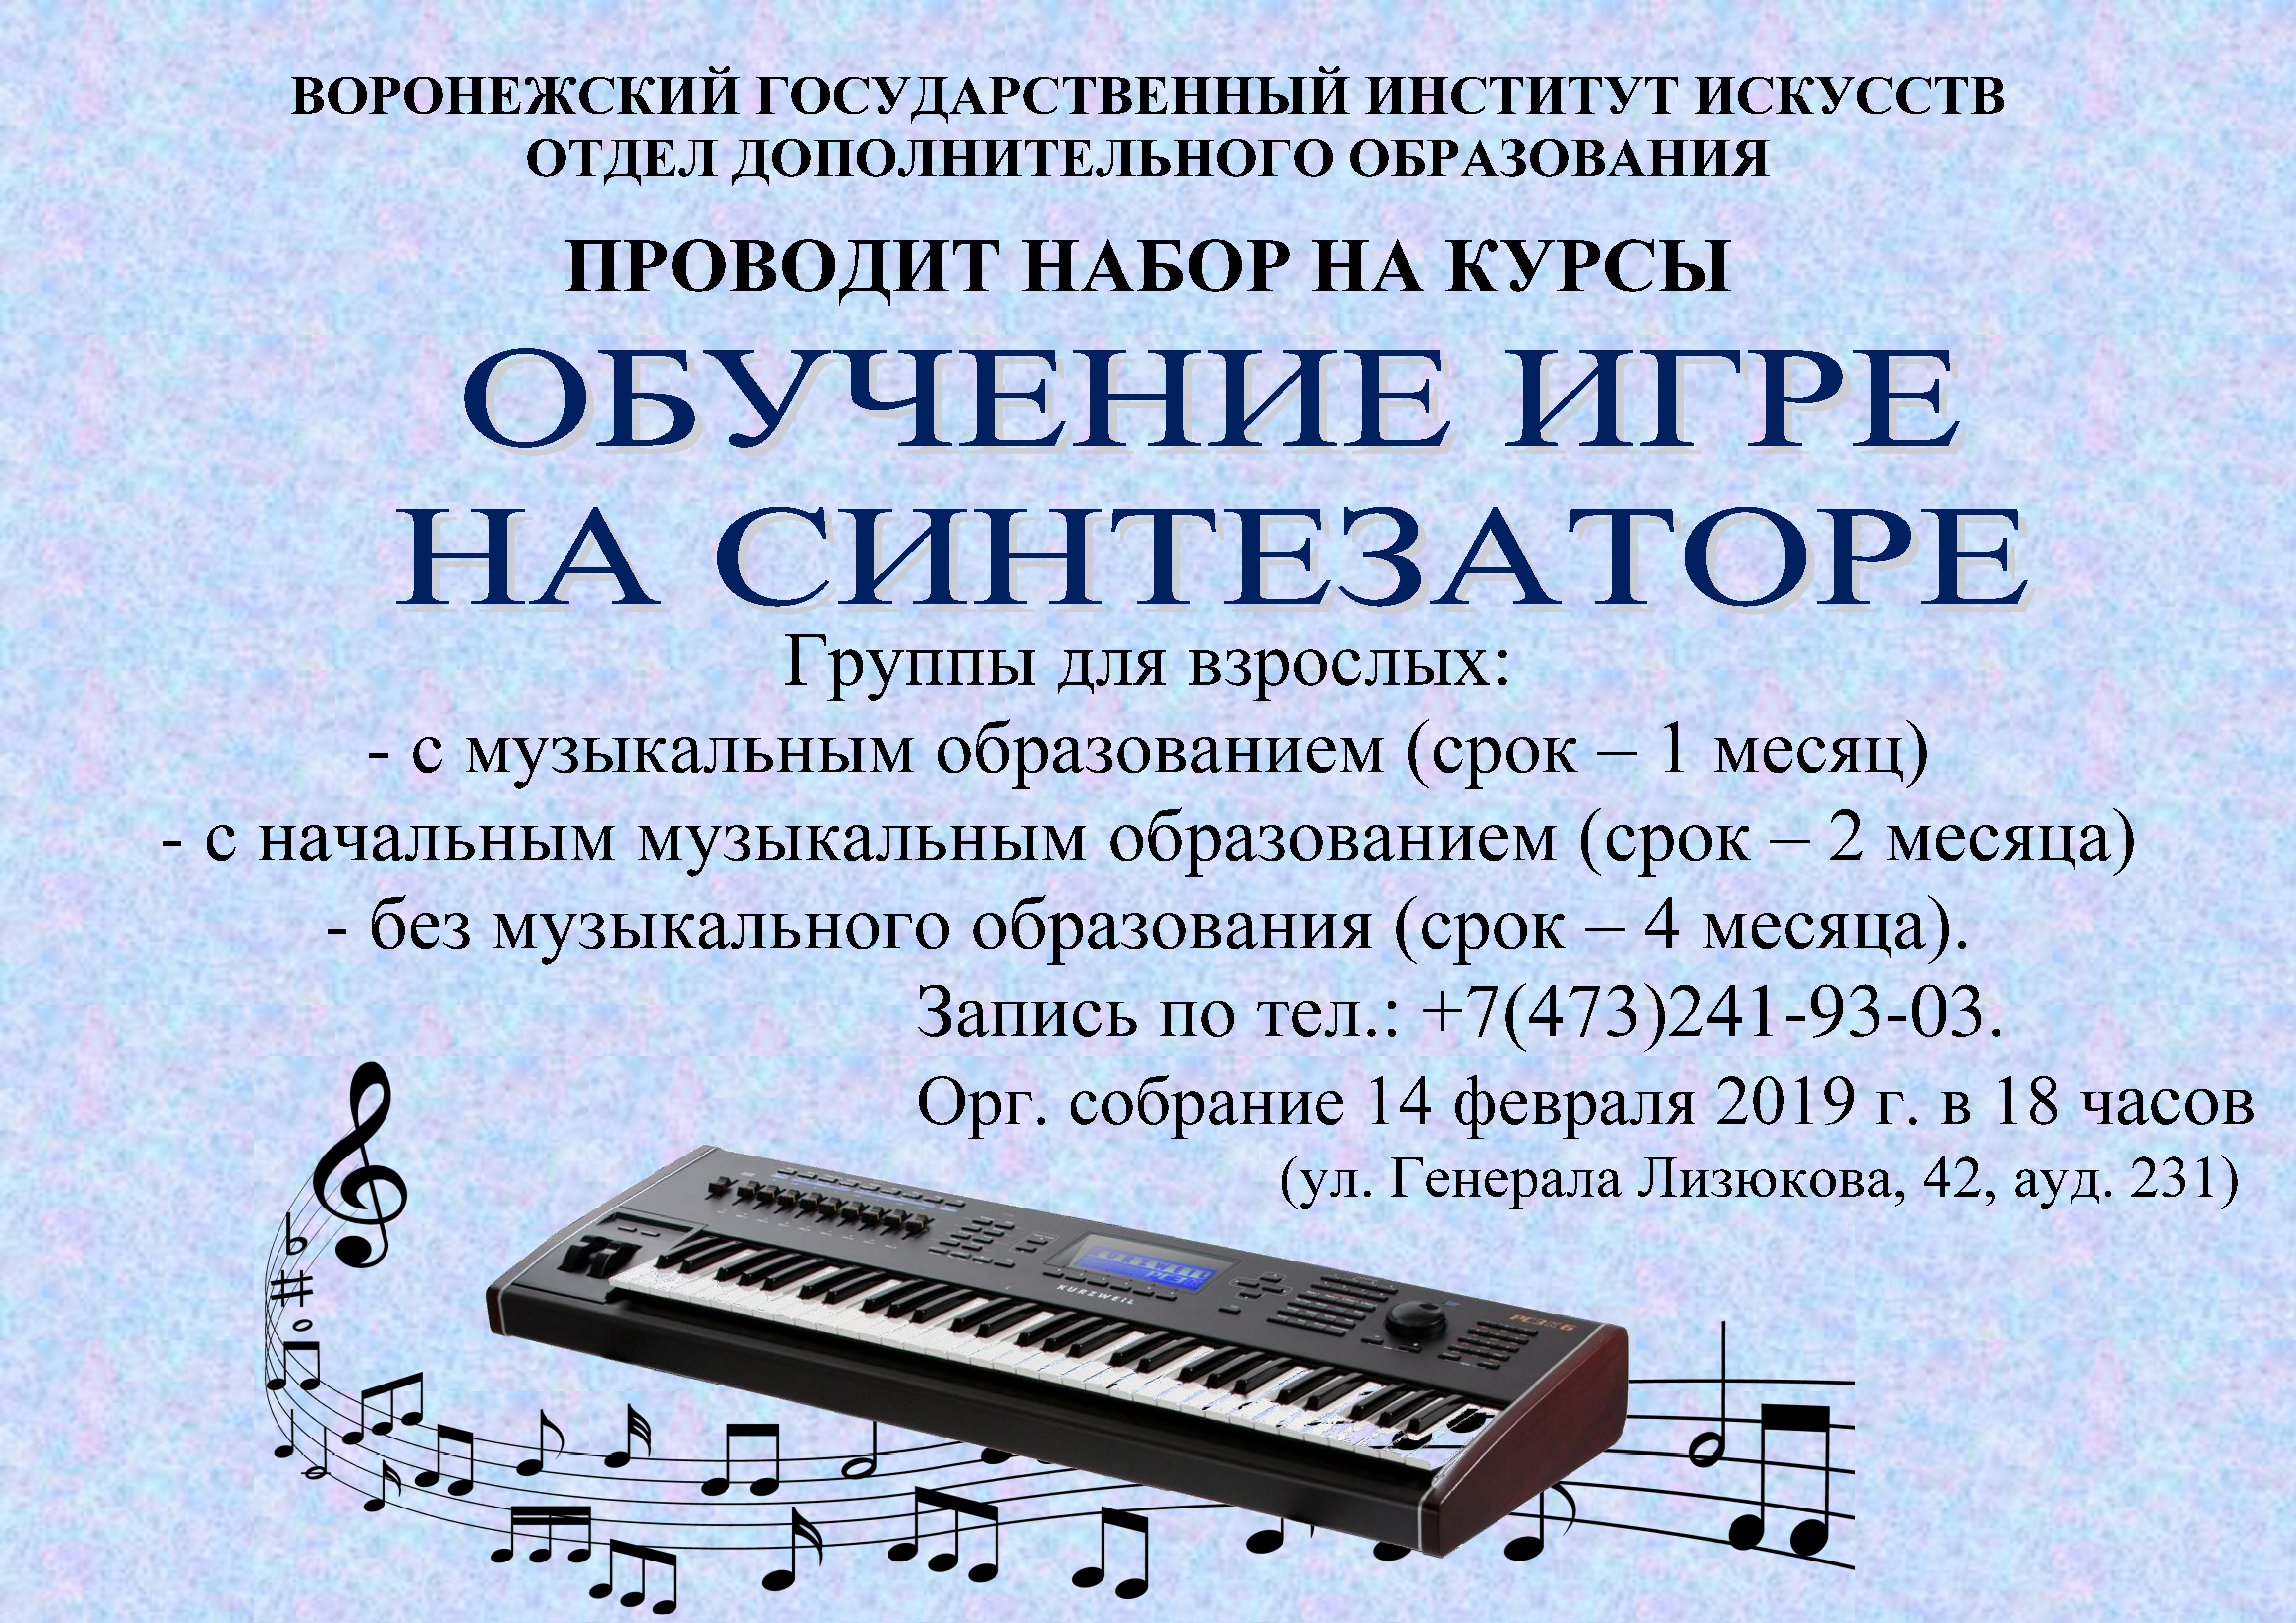 Приглашаем на курсы обучения игре на синтезаторе. Занятия проводят опытные преподаватели Воронежского института искусств.